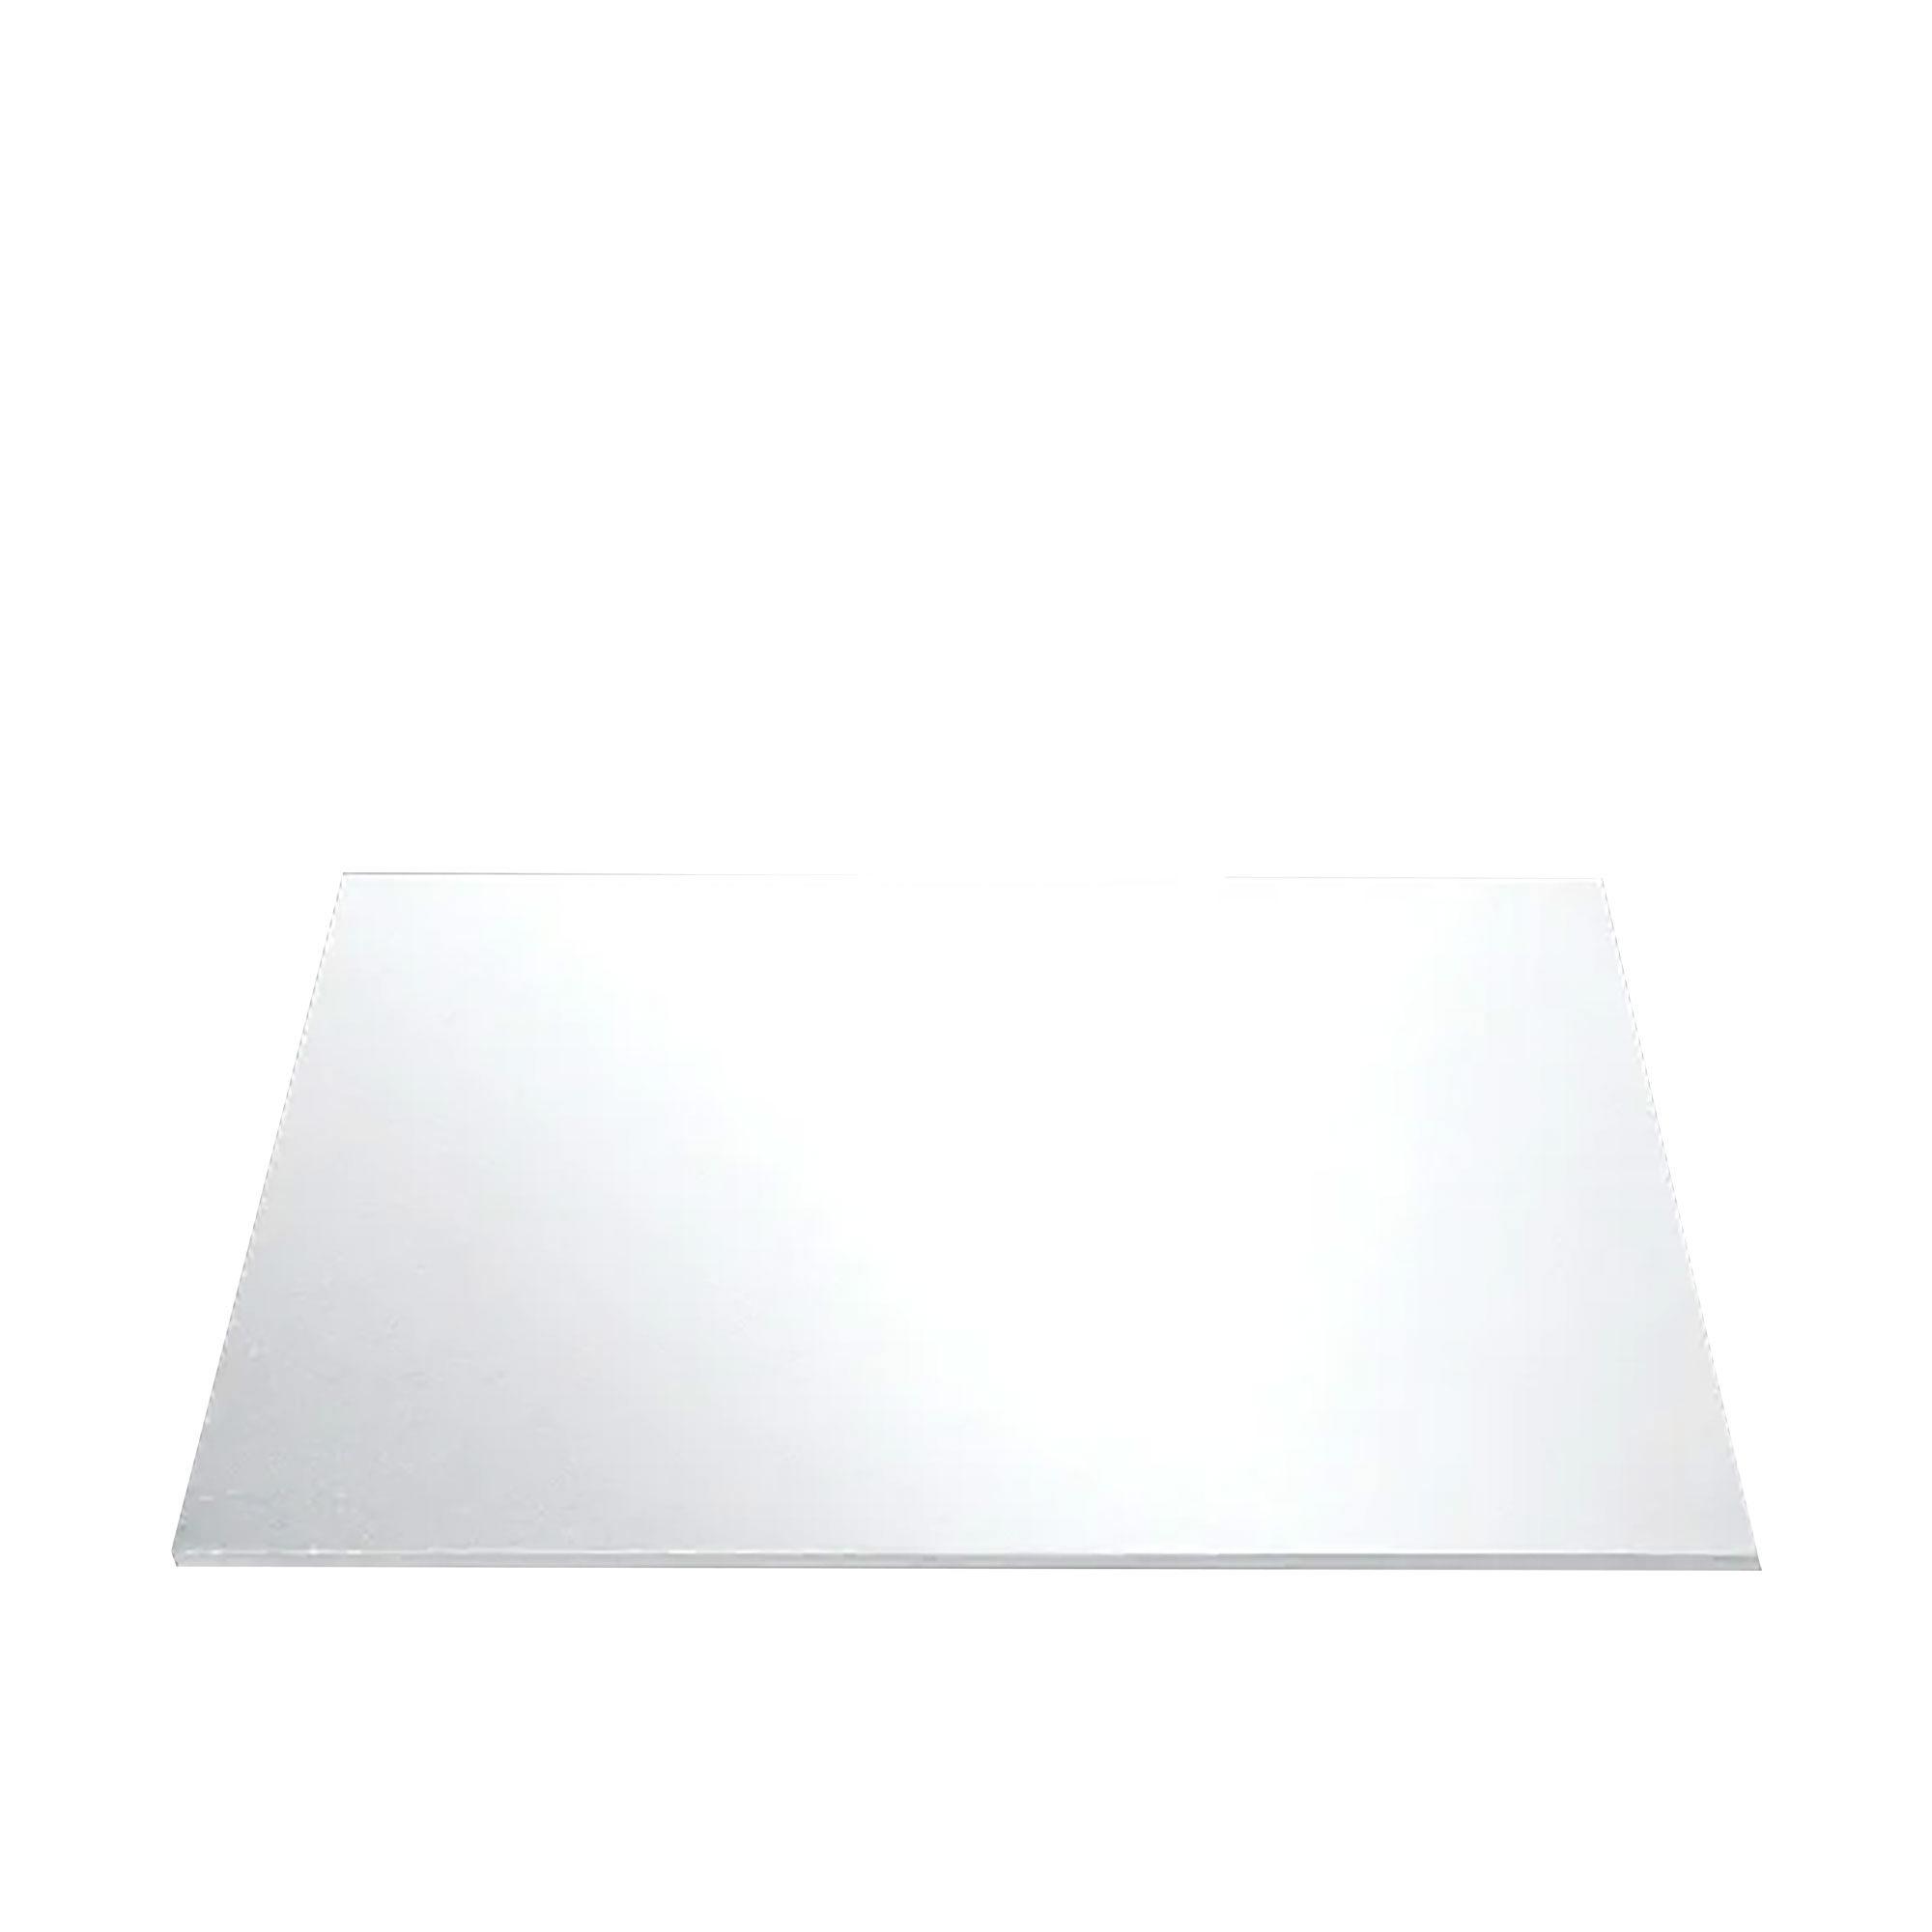 Mondo Square Cake Board 25cm White Image 1